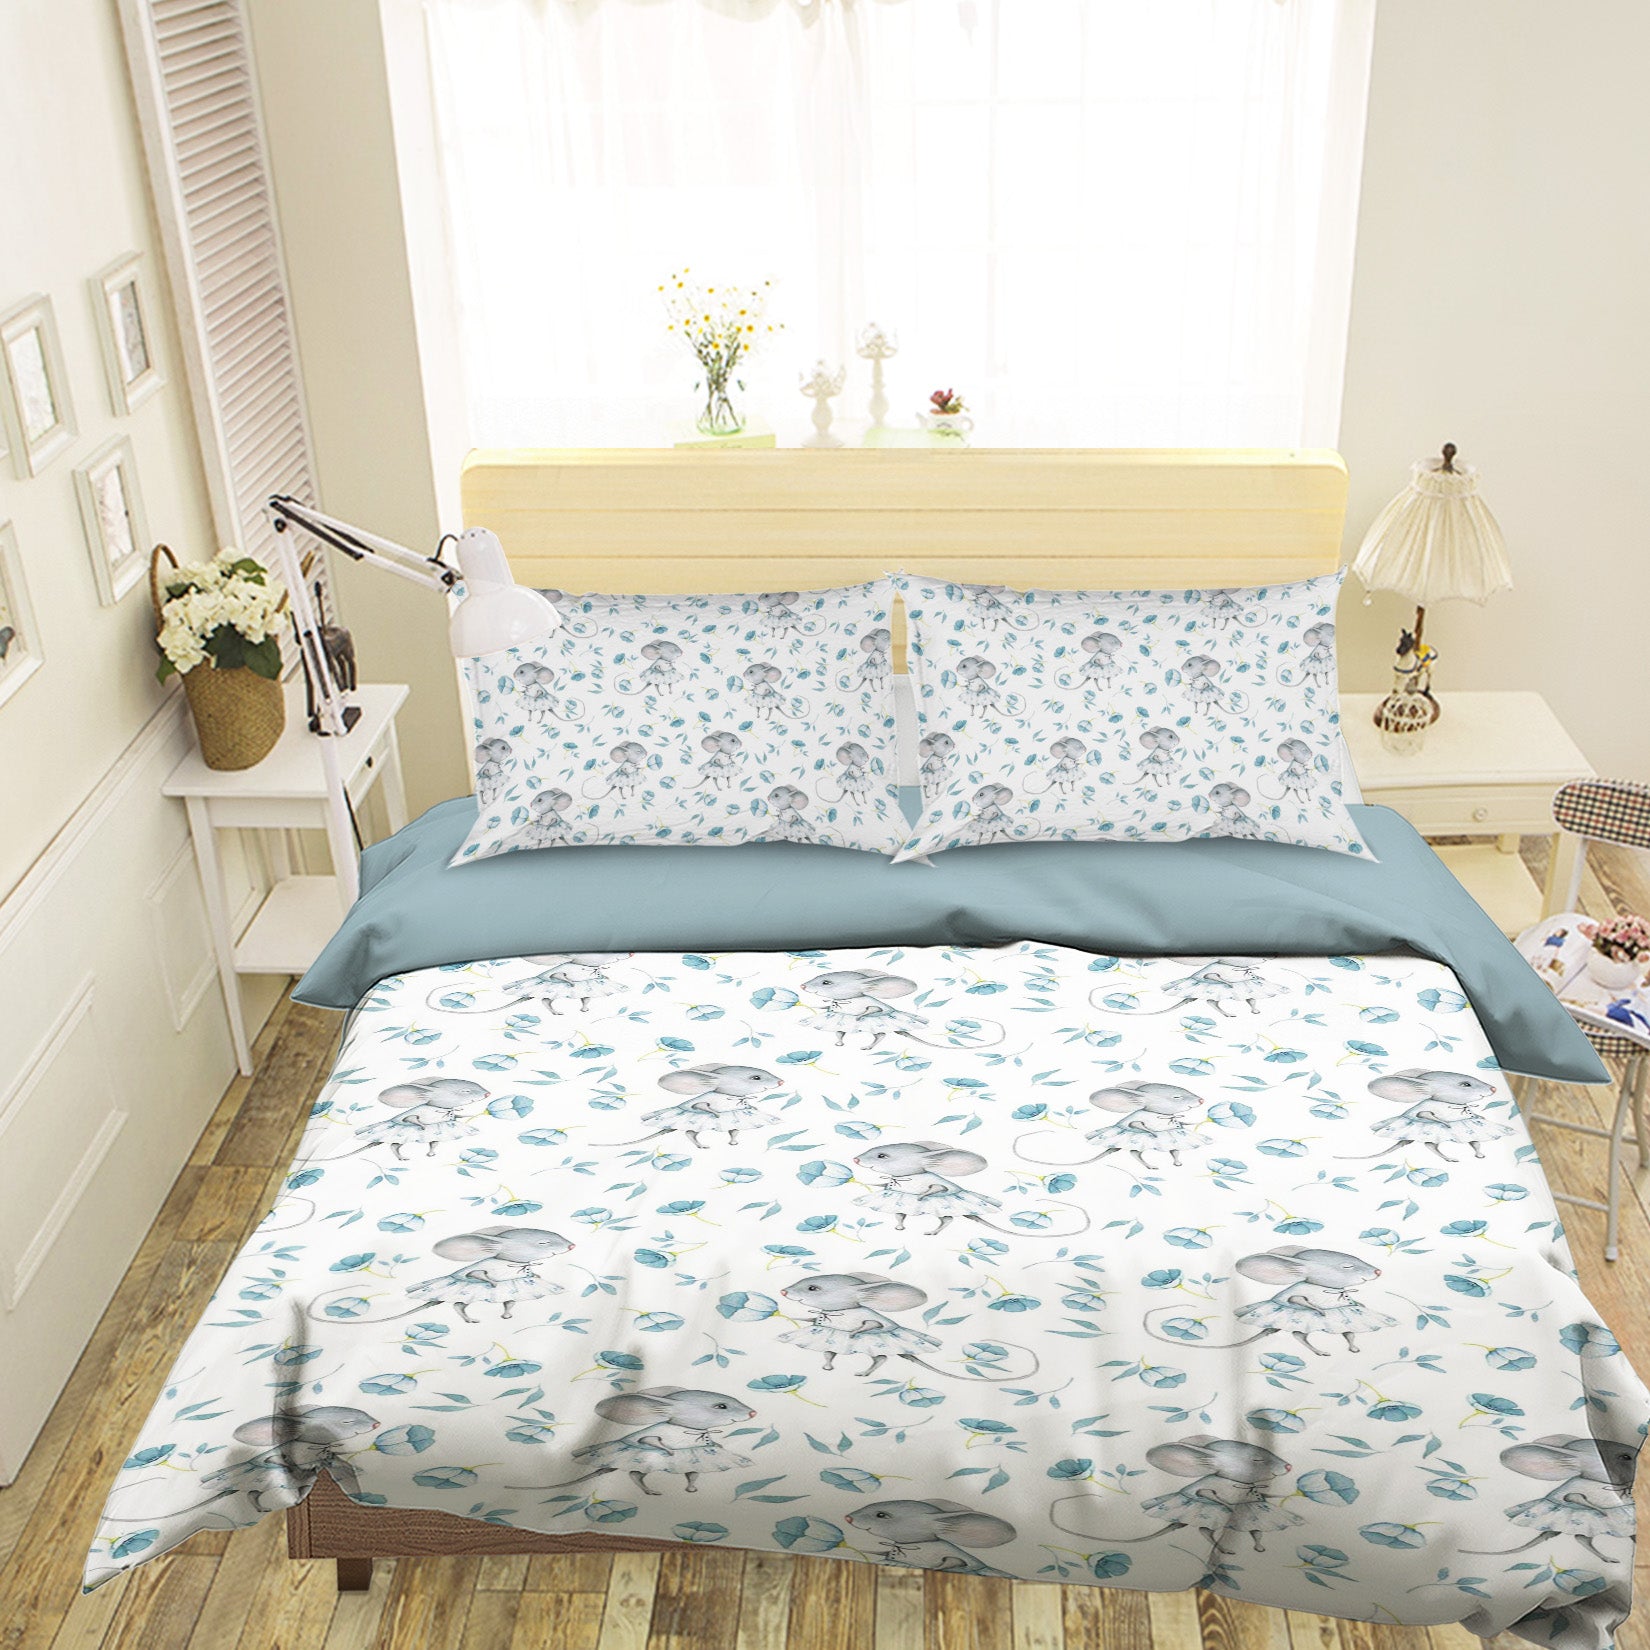 3D Mouse Flower 196 Uta Naumann Bedding Bed Pillowcases Quilt